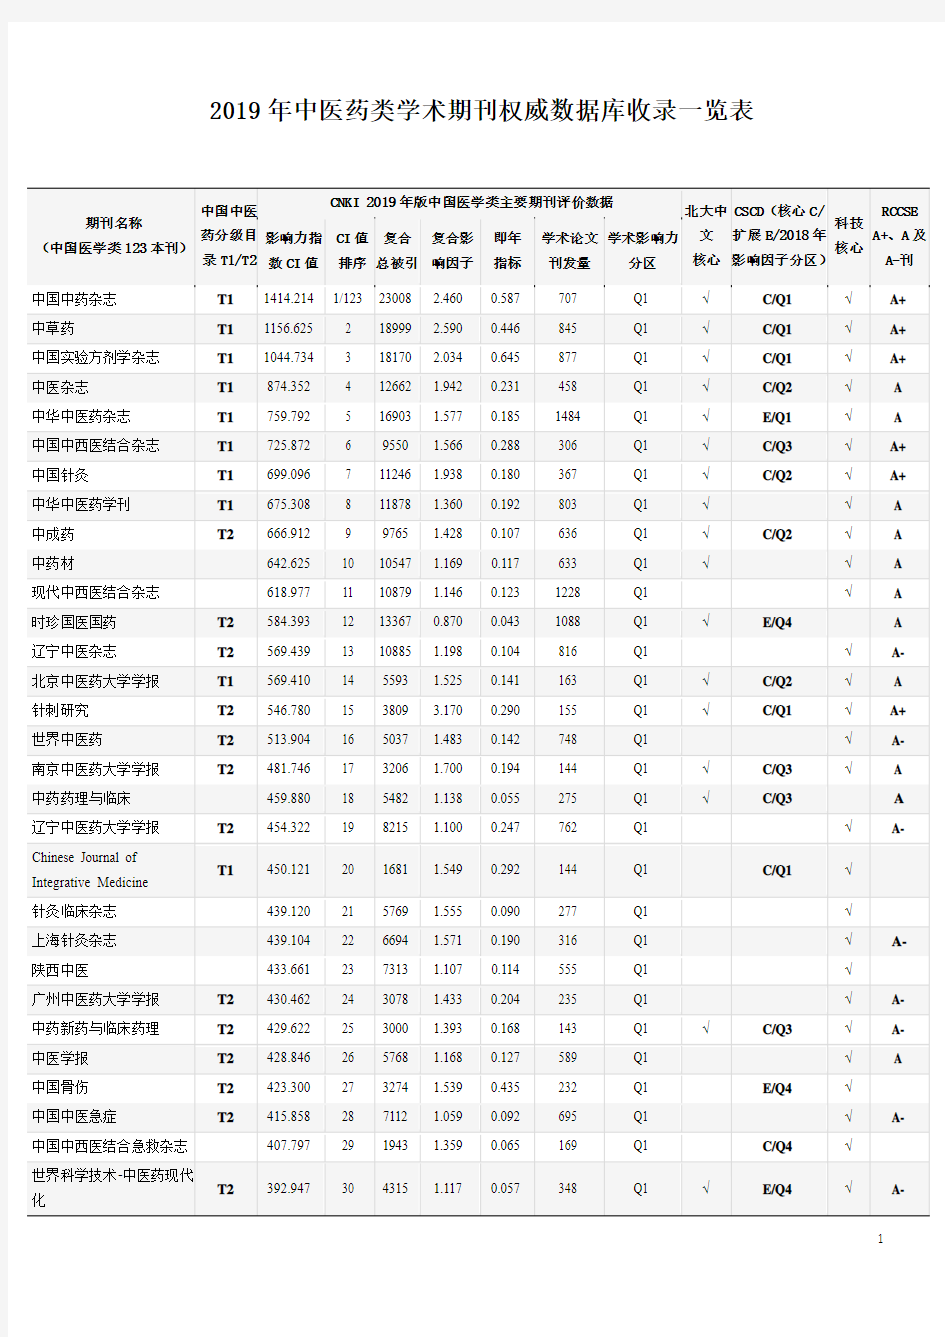 2019年中医药类学术期刊权威数据库收录一览表